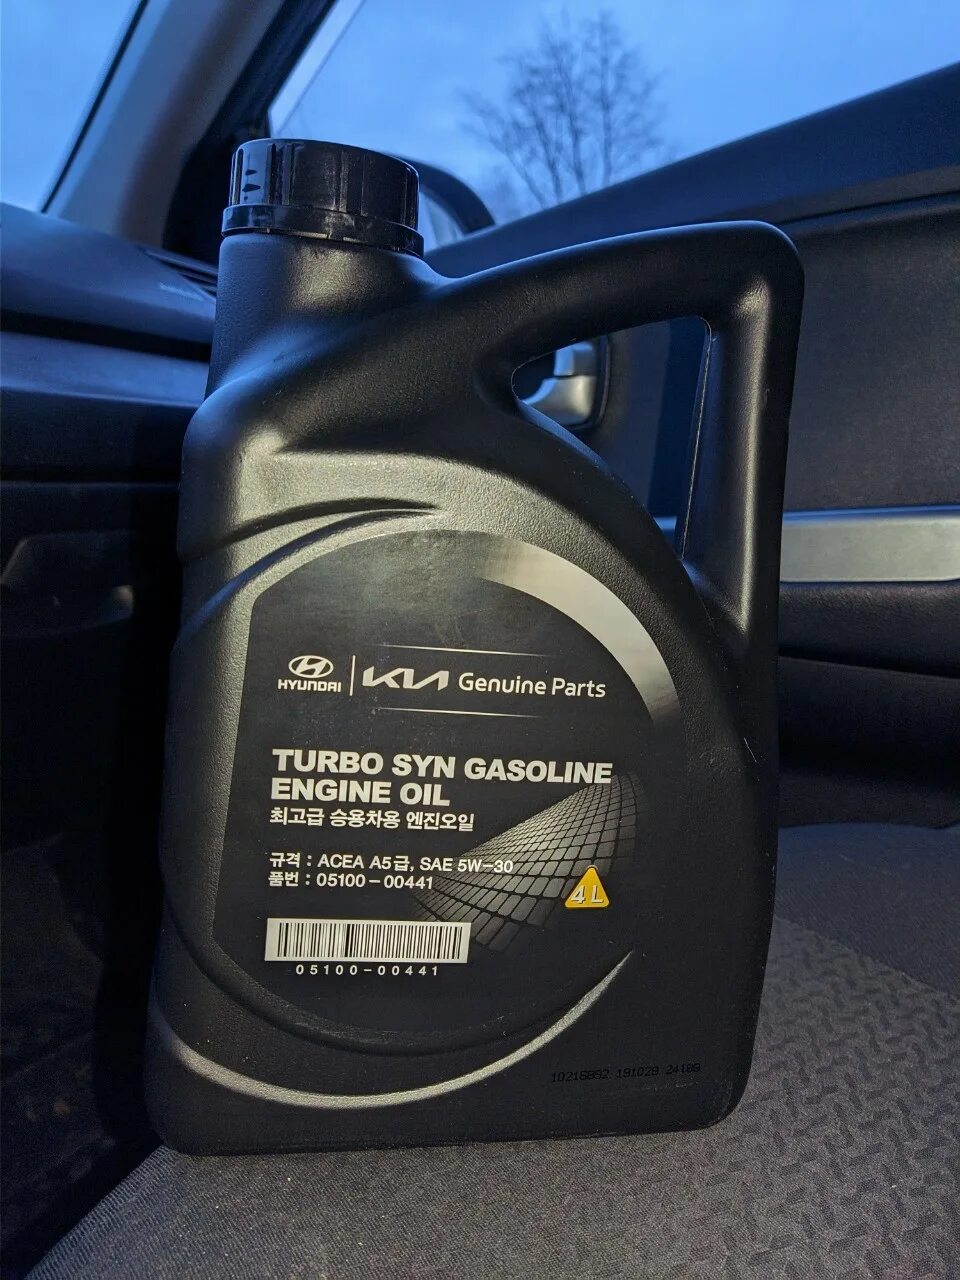 Hyundai Turbo gasoline 5w-30. Hyundai Turbo syn gasoline 5w-30. Масло Hyundai 5w30 Turbo syn. Kia Turbo syn 5w30. Масло хендай крета 5w30